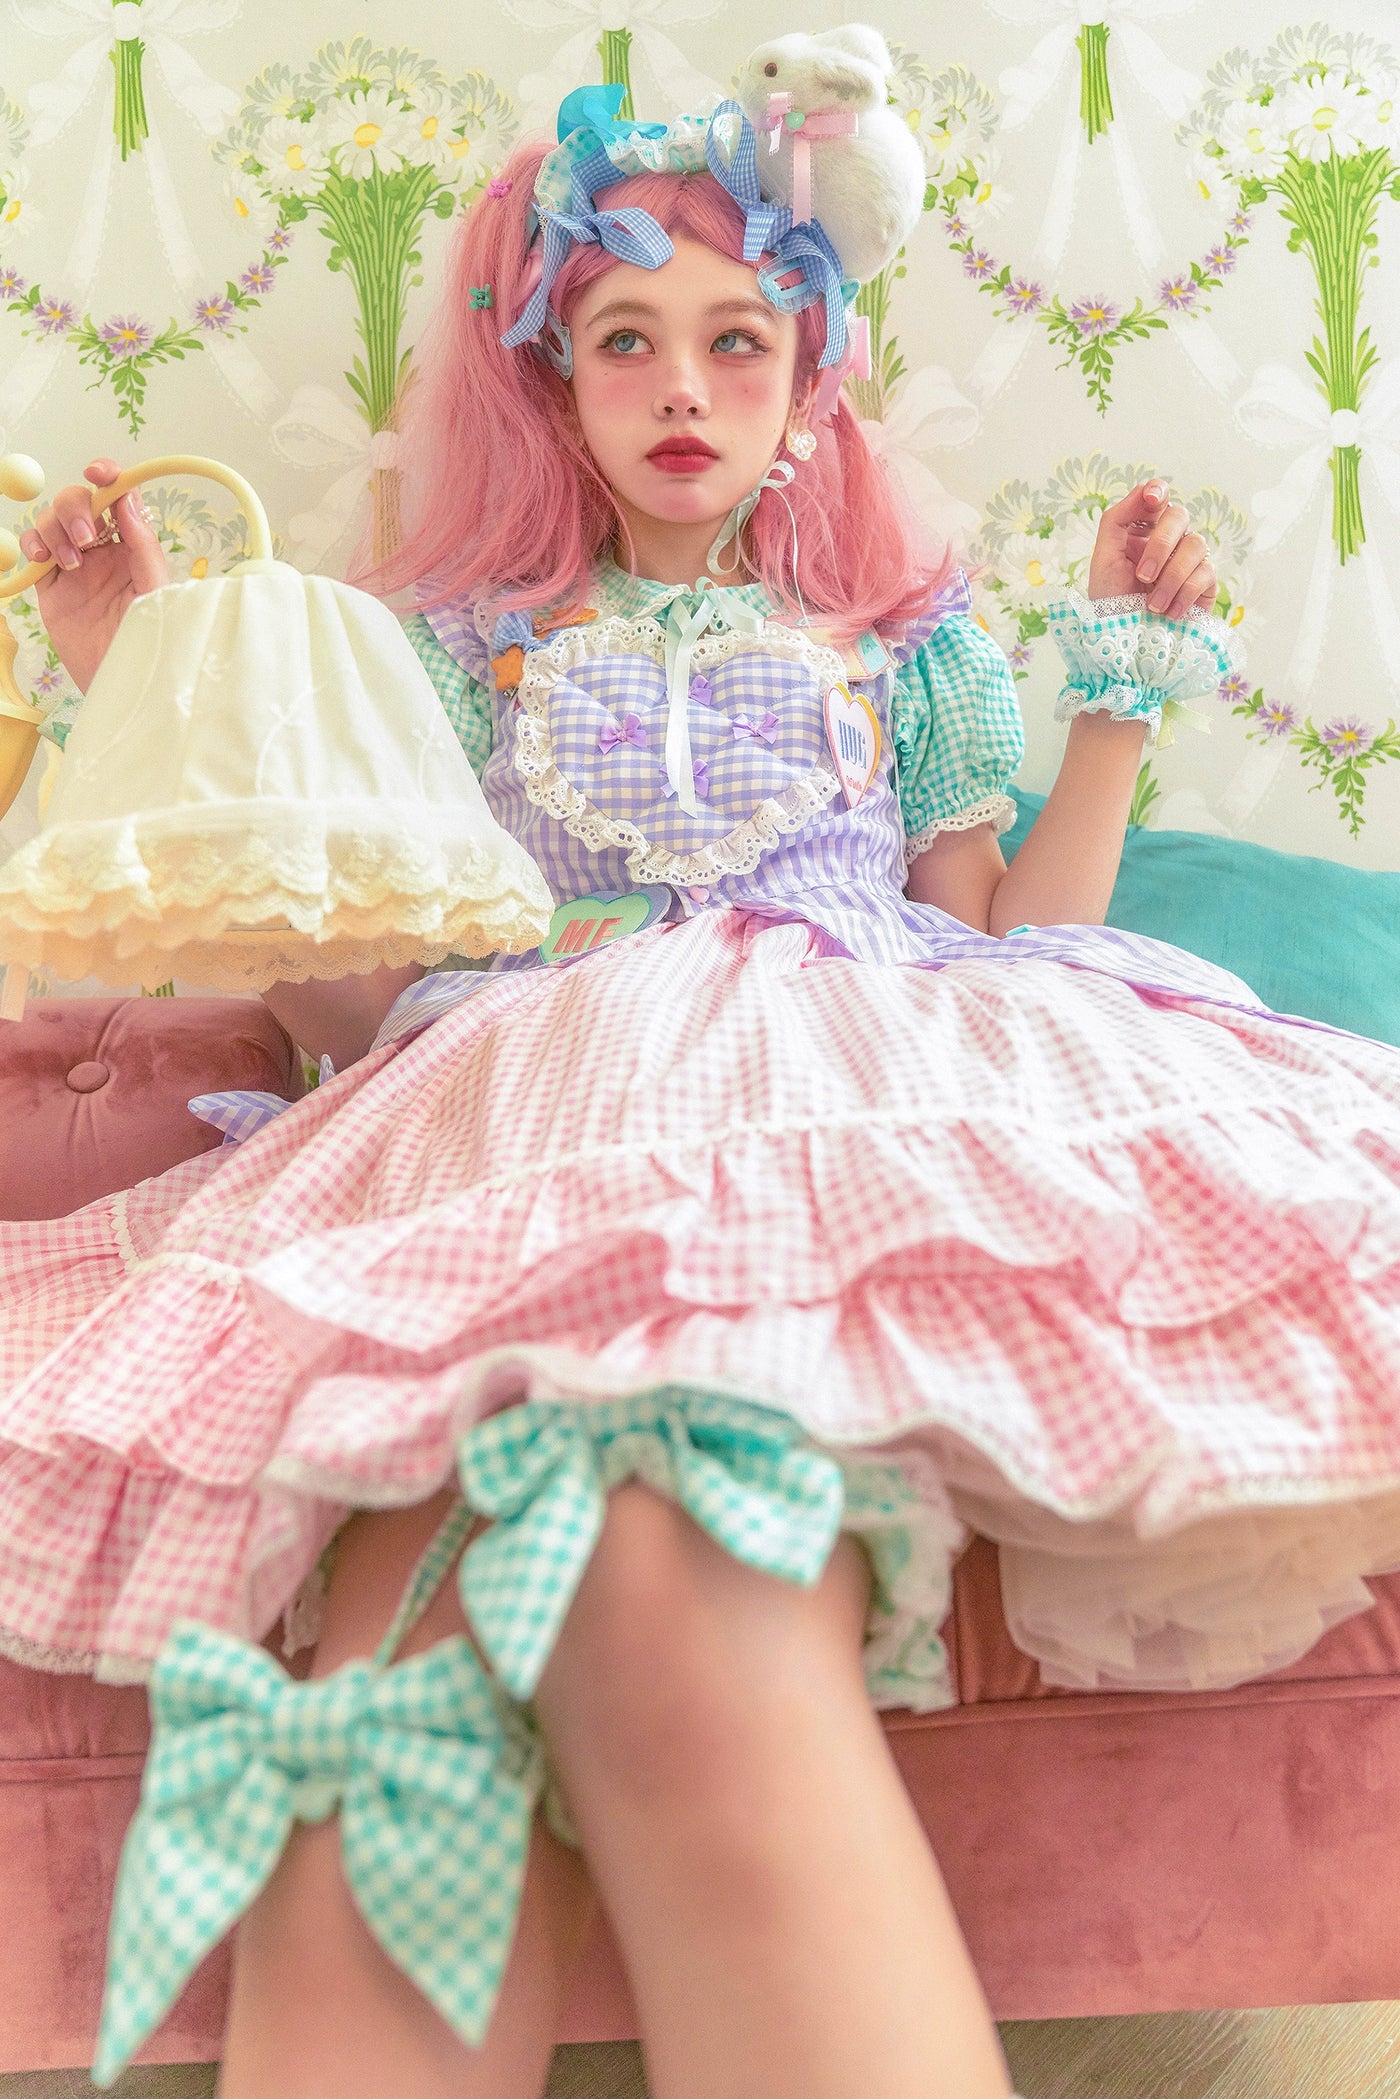 (BFM)Fluff Mollie~Bean Breakfast~Sweet Lolita Overskirt Daily Daily Petaled Skirt   